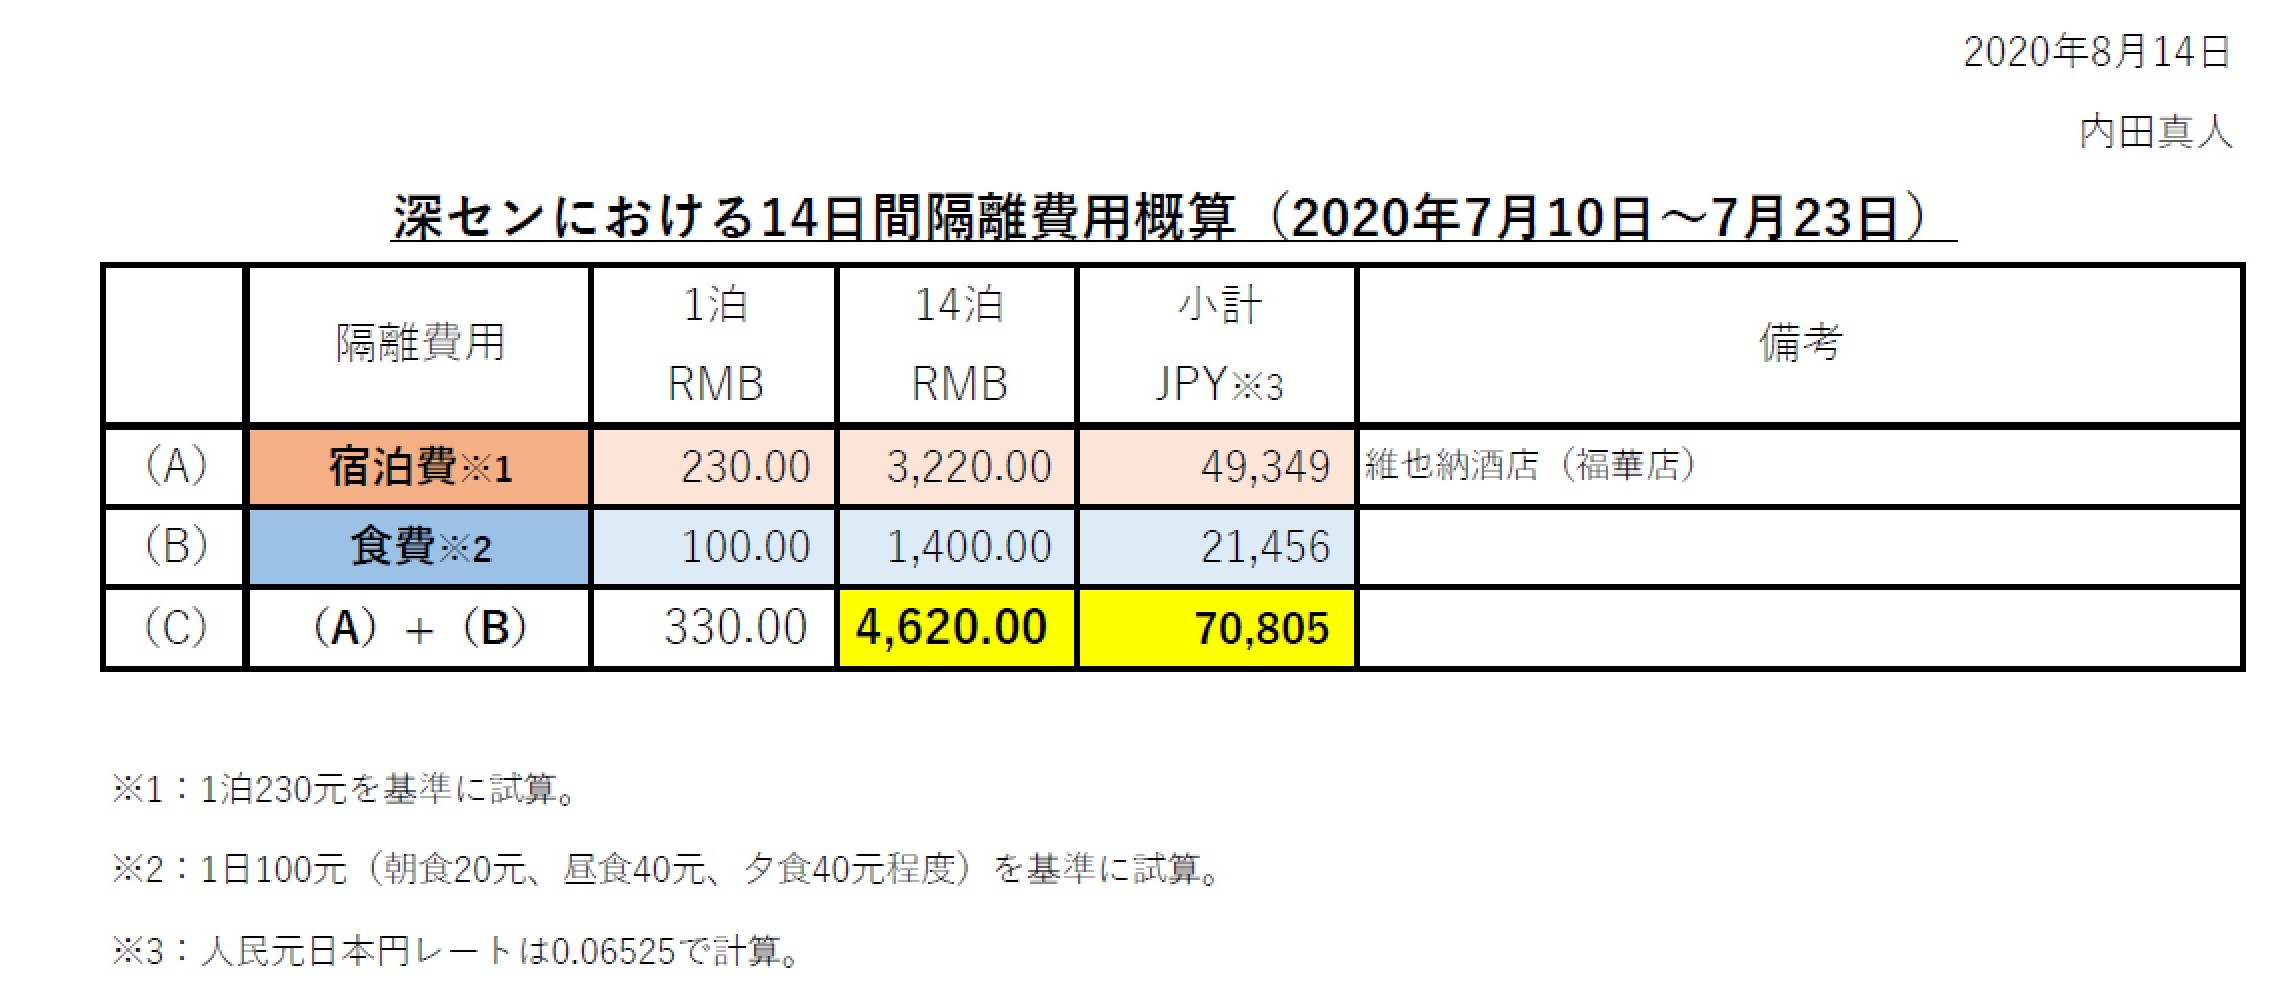 深圳における14日間隔離費用概算（2020年7月10日～7月23日）